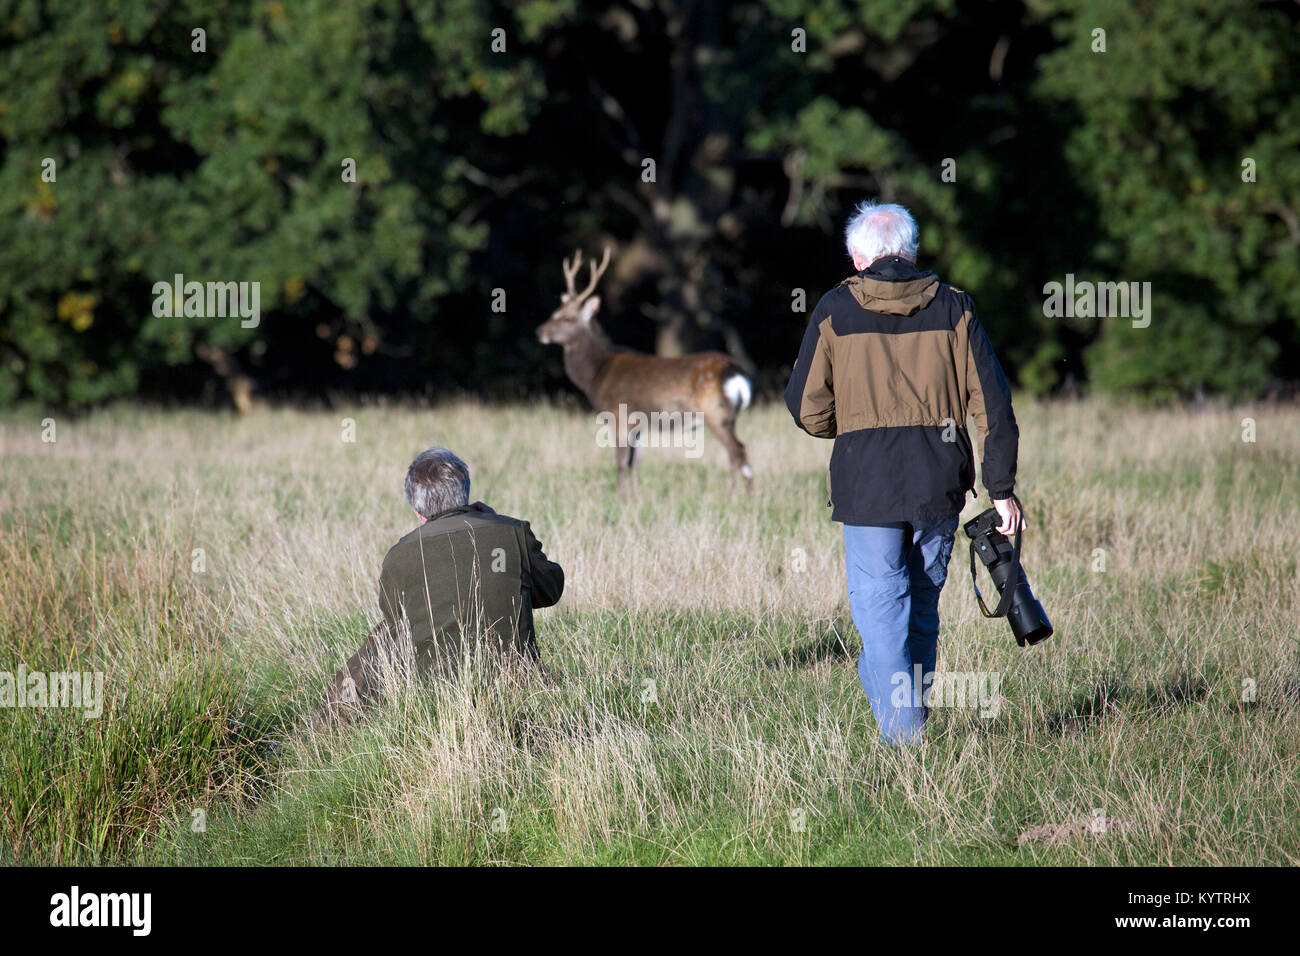 Les photographes de la faune / nature photographe approchant le cerf Sika deer tacheté // Japanese deer (Cervus nippon) stag en forêt d'automne Banque D'Images